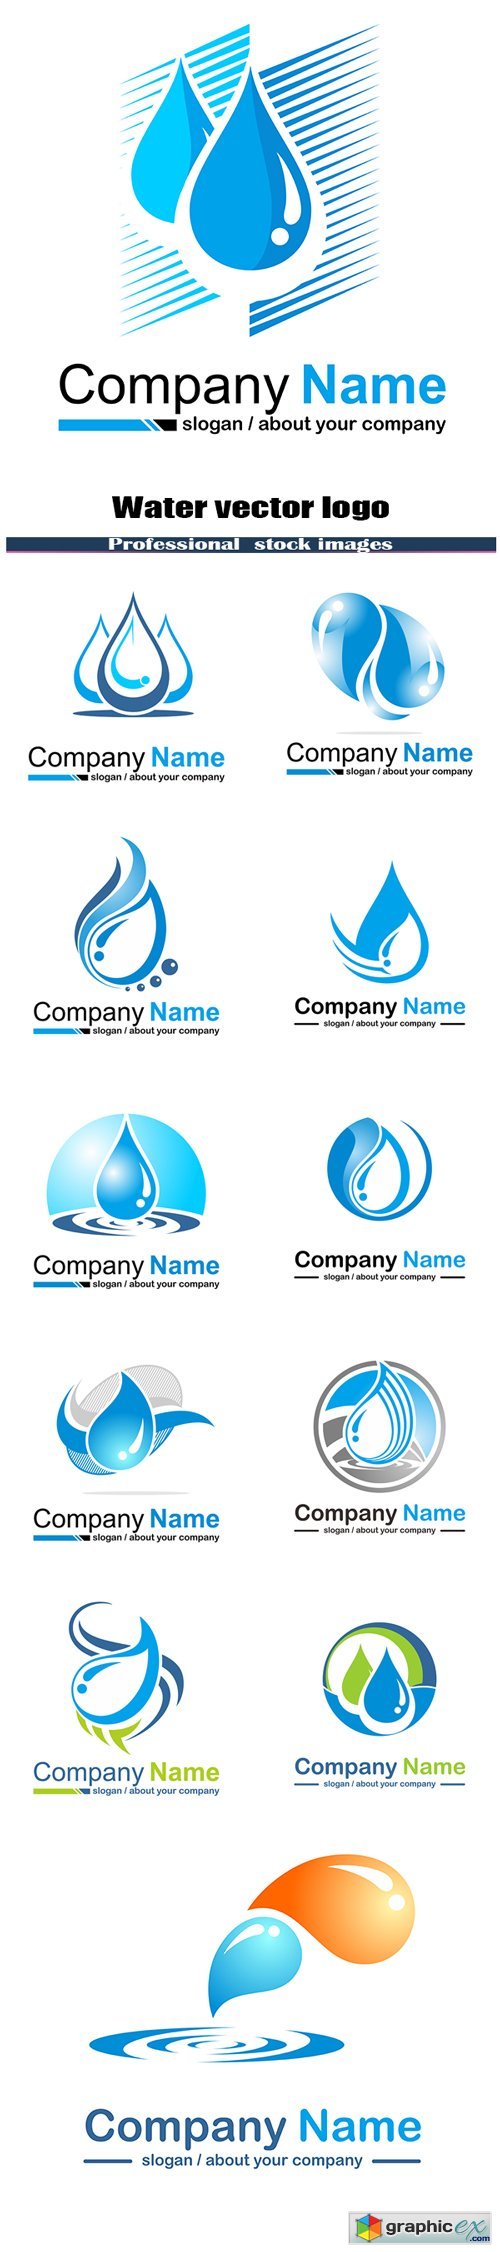 Water vector logo